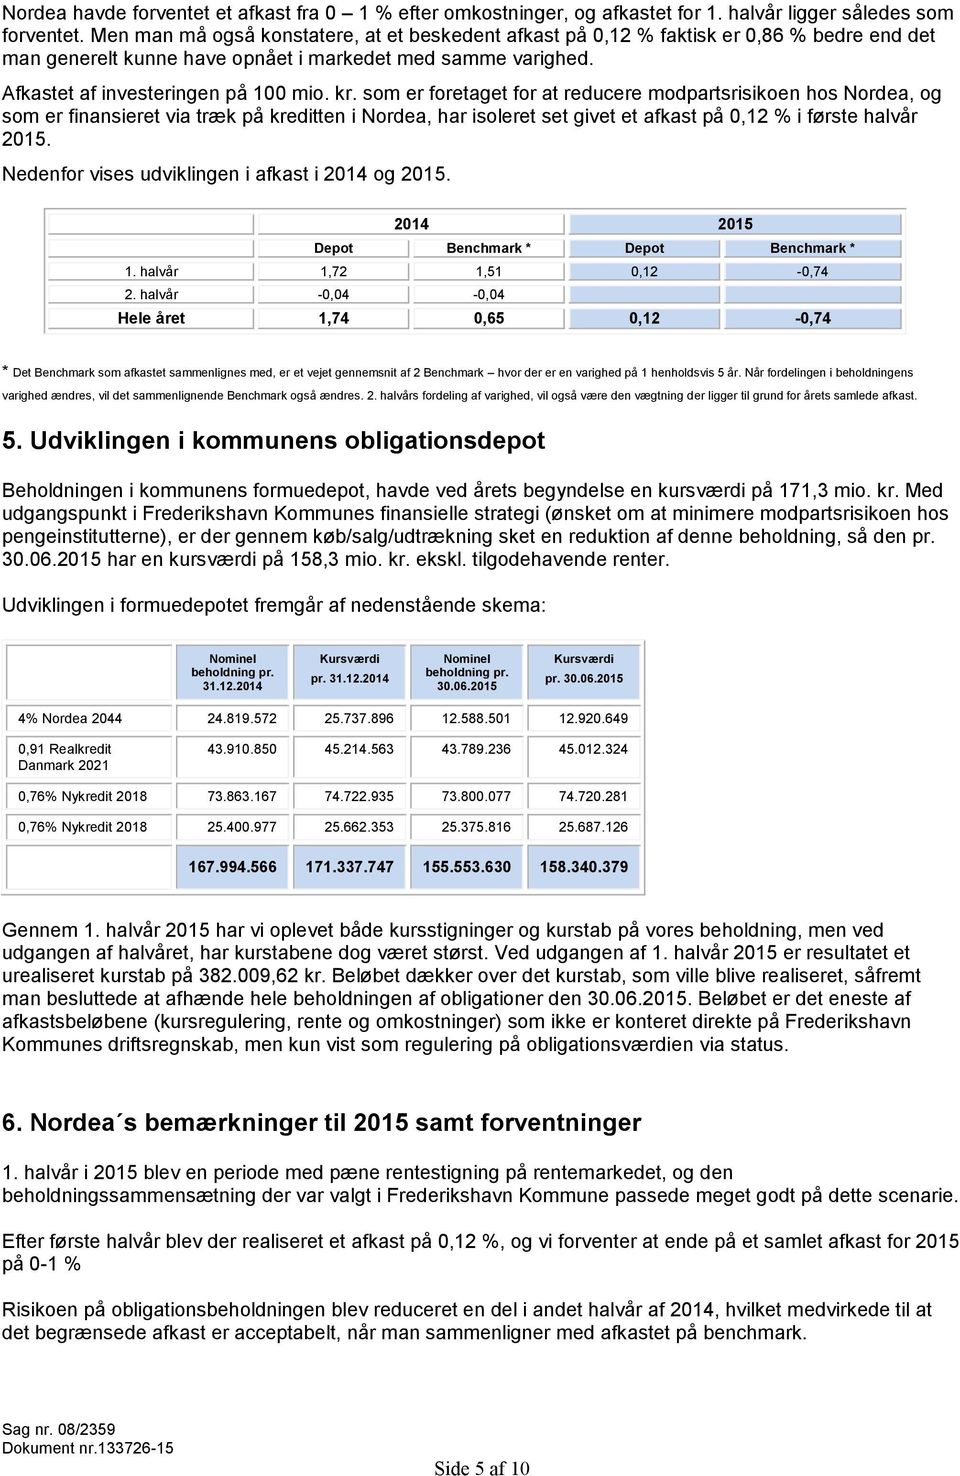 som er foretaget for at reducere modpartsrisikoen hos Nordea, og som er finansieret via træk på kreditten i Nordea, har isoleret set givet et afkast på 0,12 % i første halvår 2015.